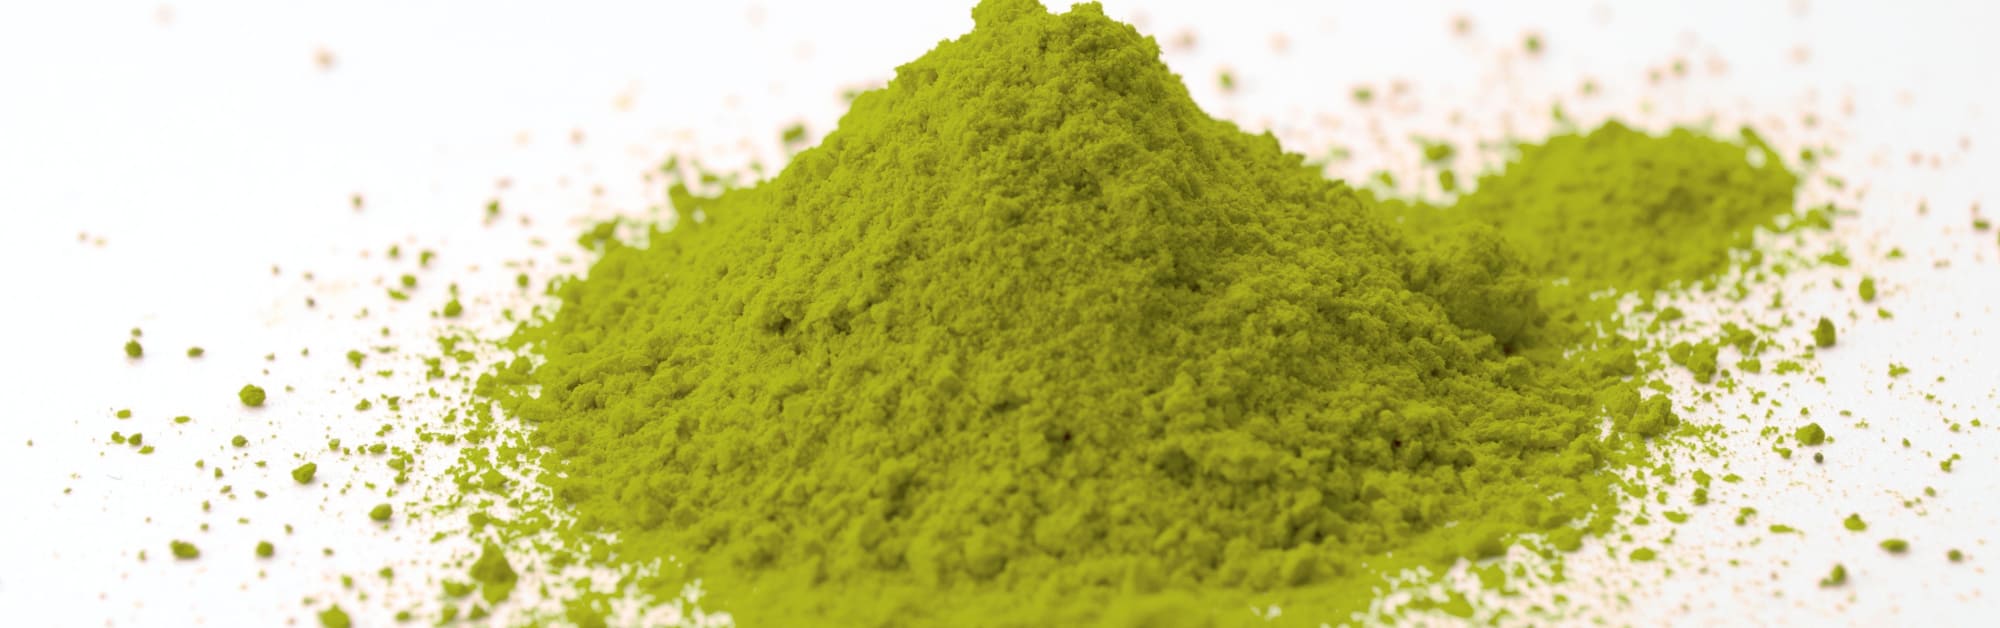 image of benefits of green sulawesi kratom